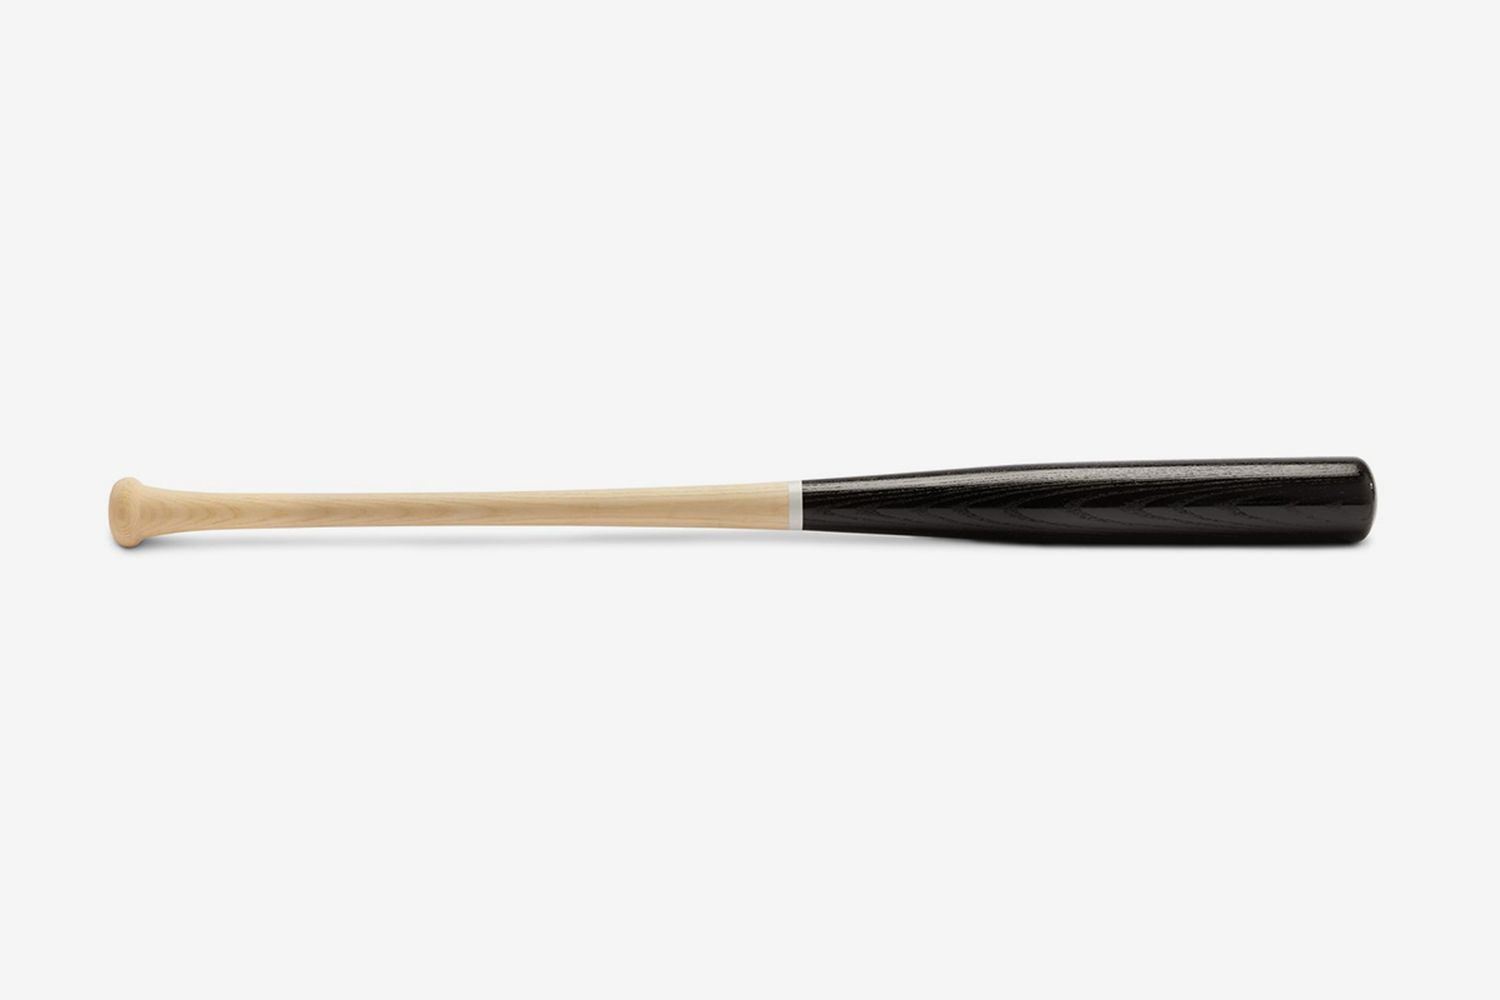 Baseball bat 2.0